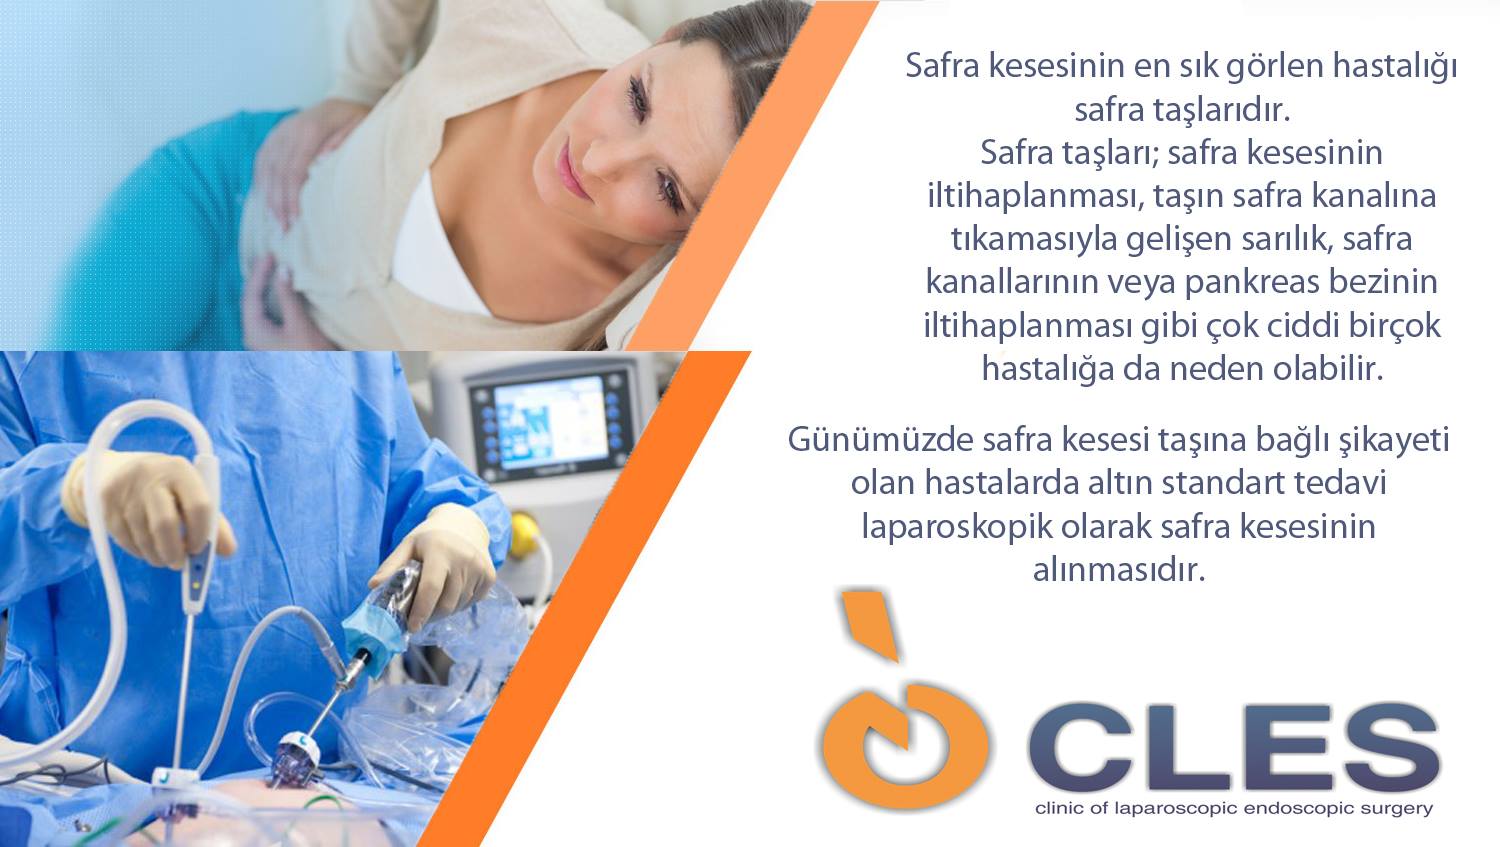 kibris-hastanesi-cles-klinik-slider3